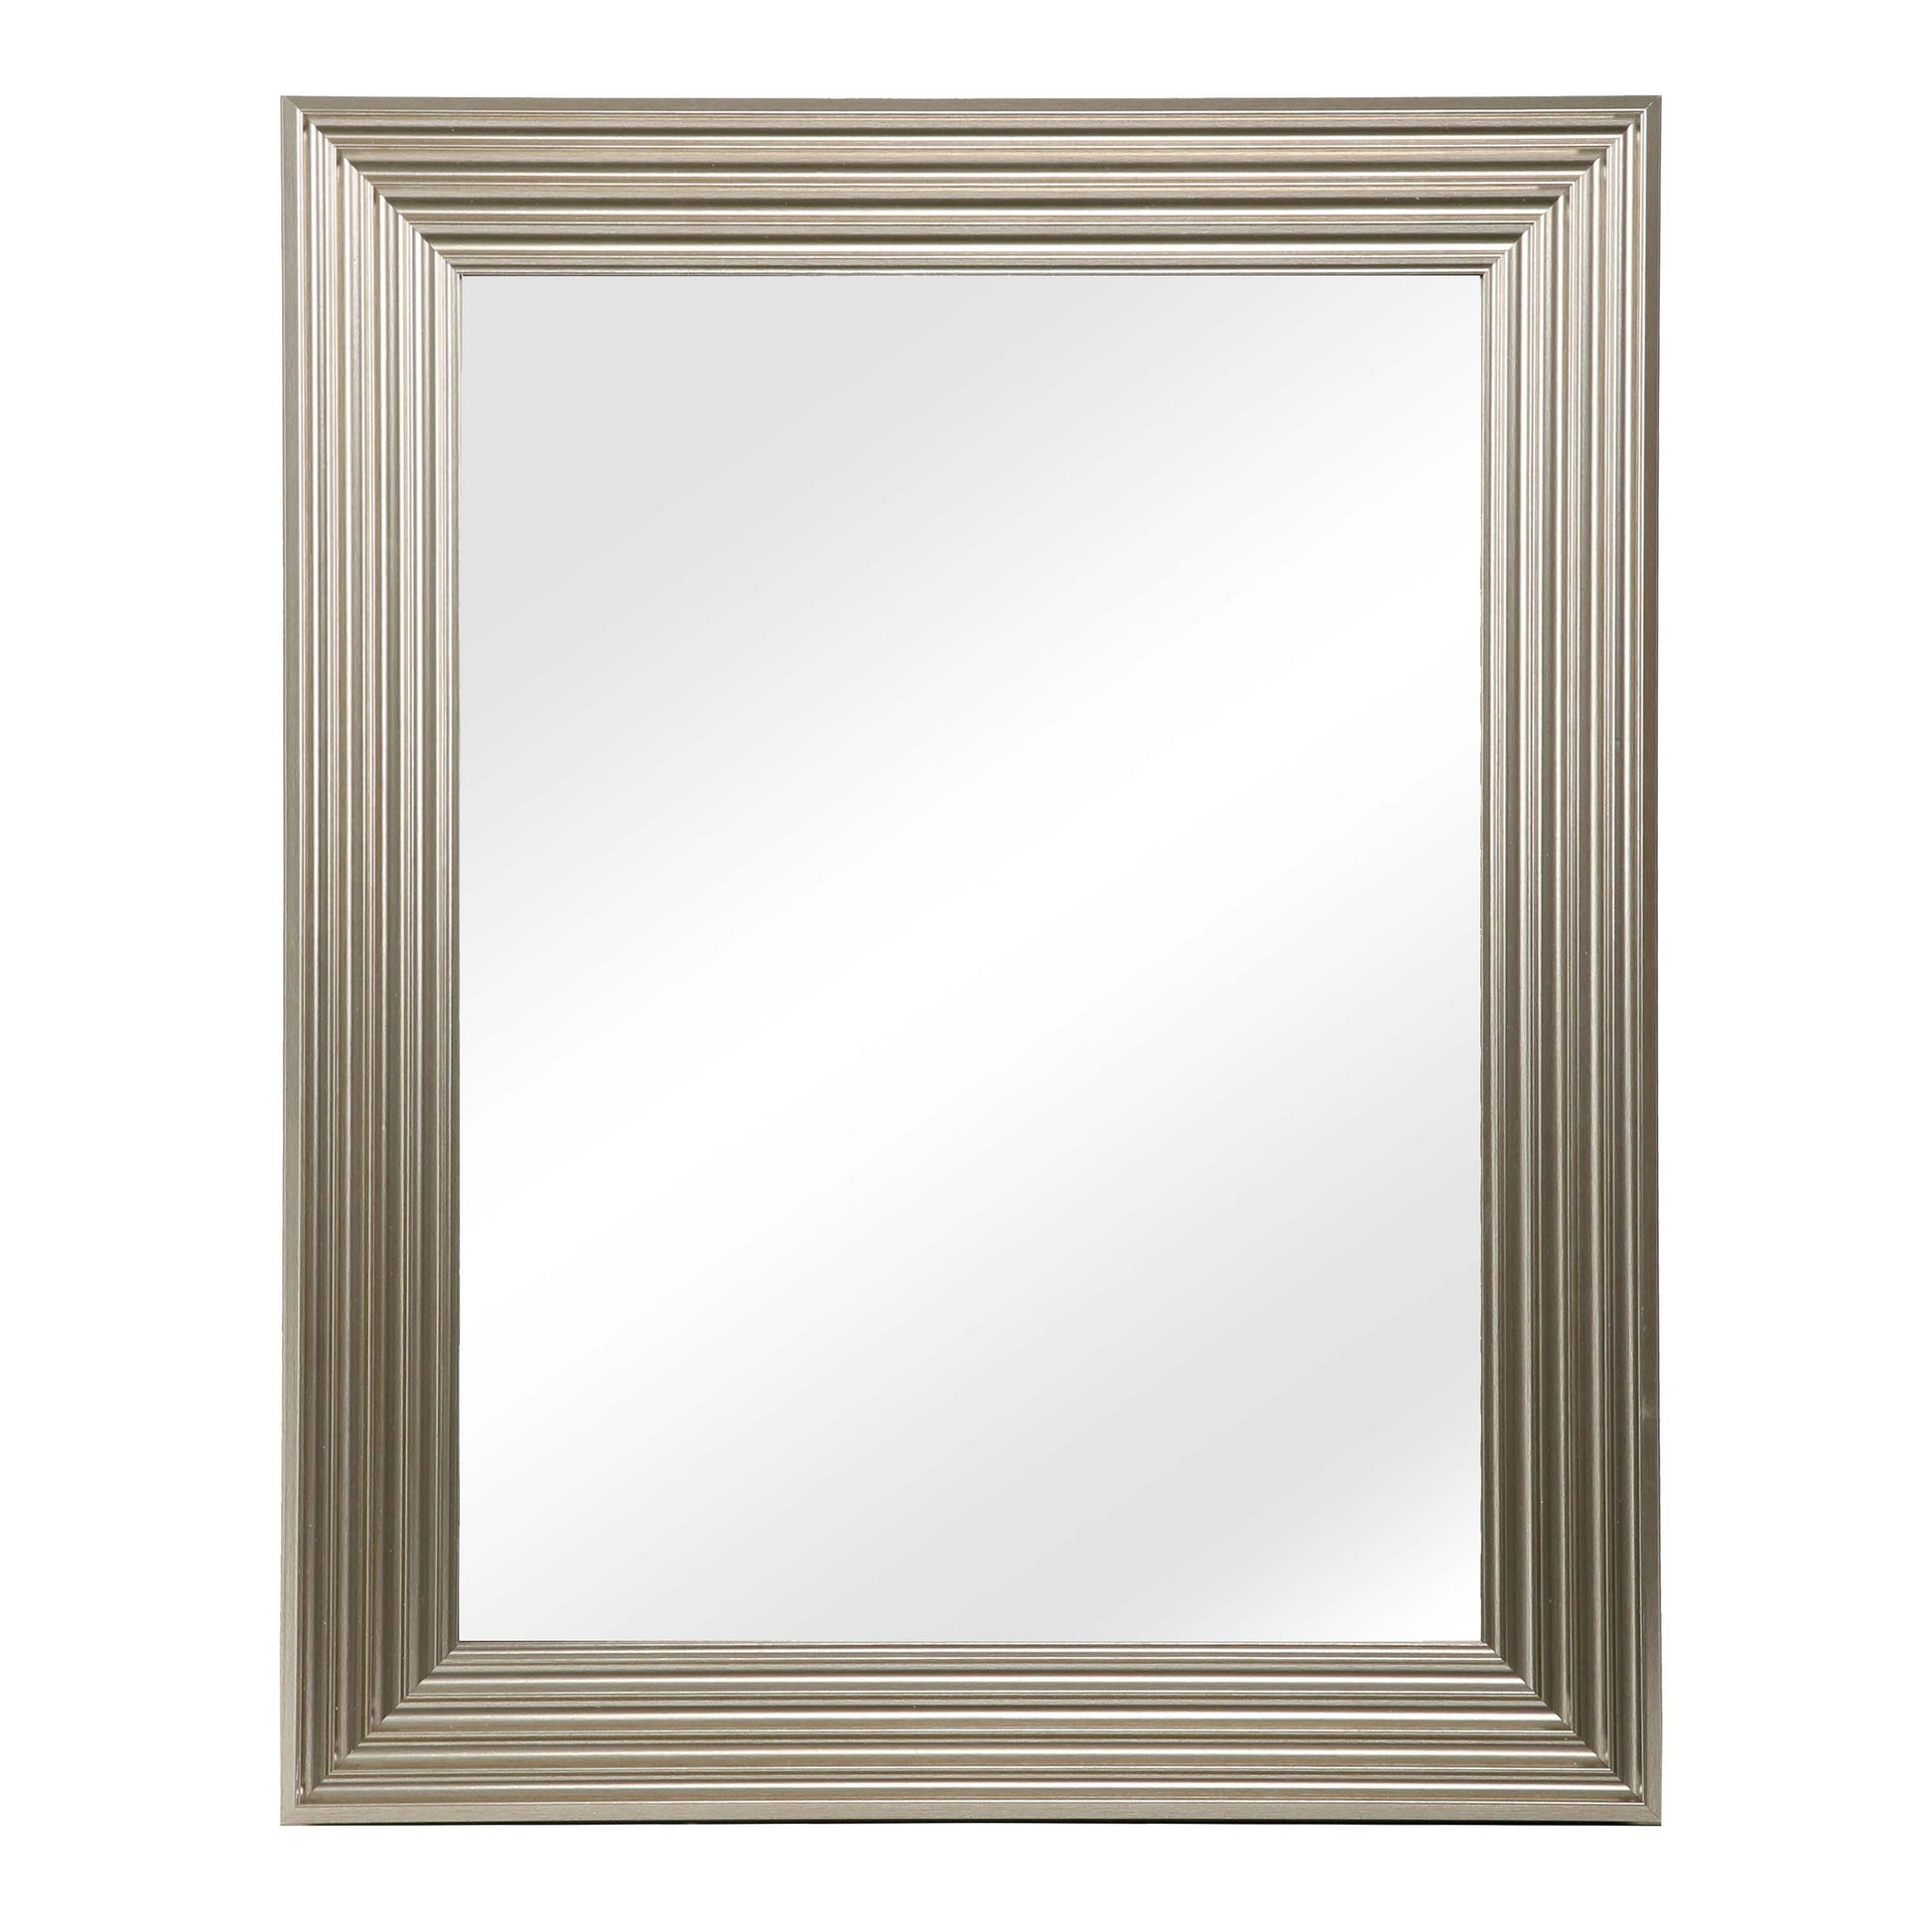 Medea mirror - rectangular - large - Laura James